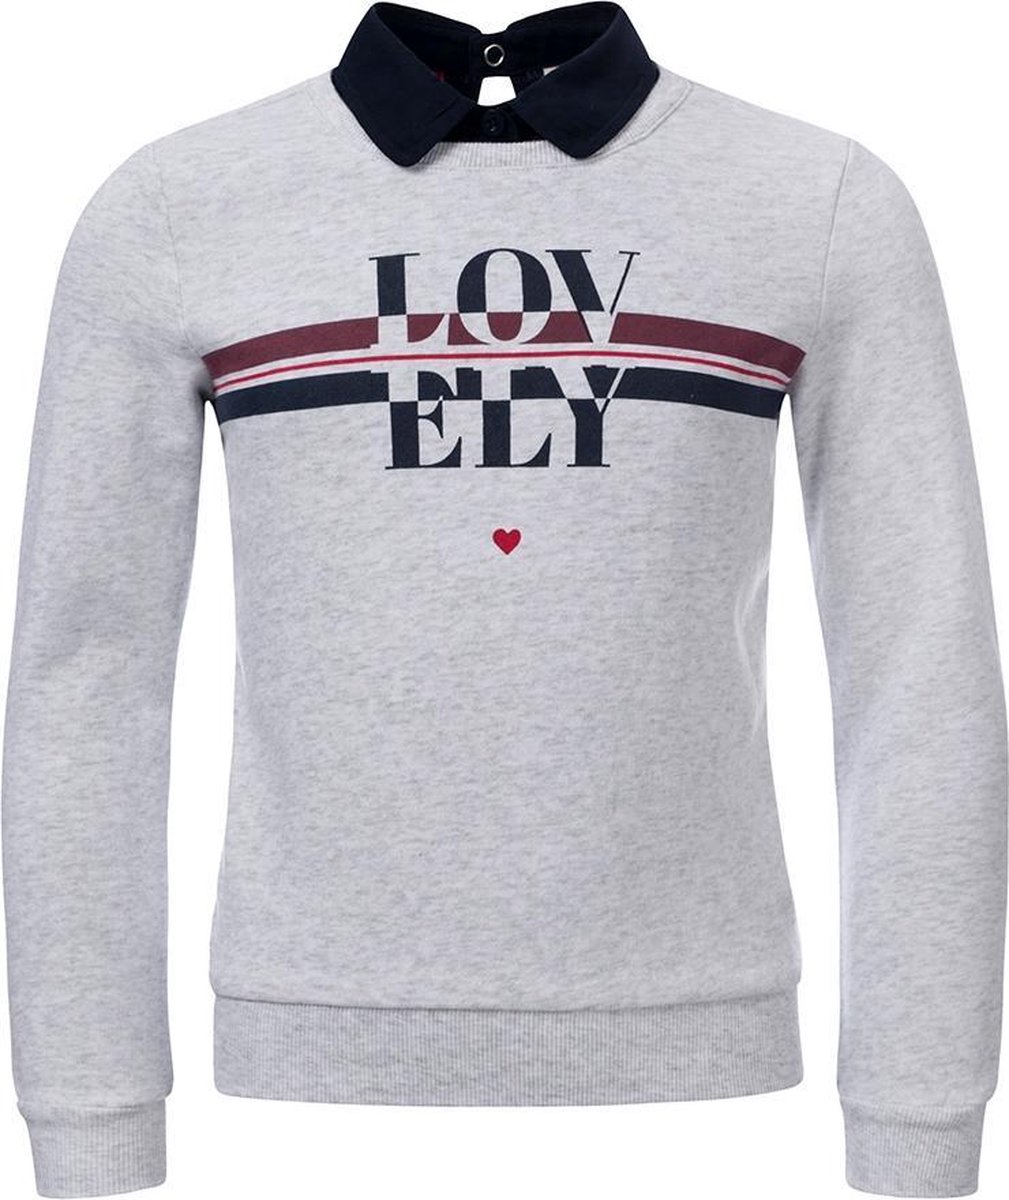 Looxs Revolution - Sweater met kraagje - Maat 140 - Artikelnr 931-5328-720